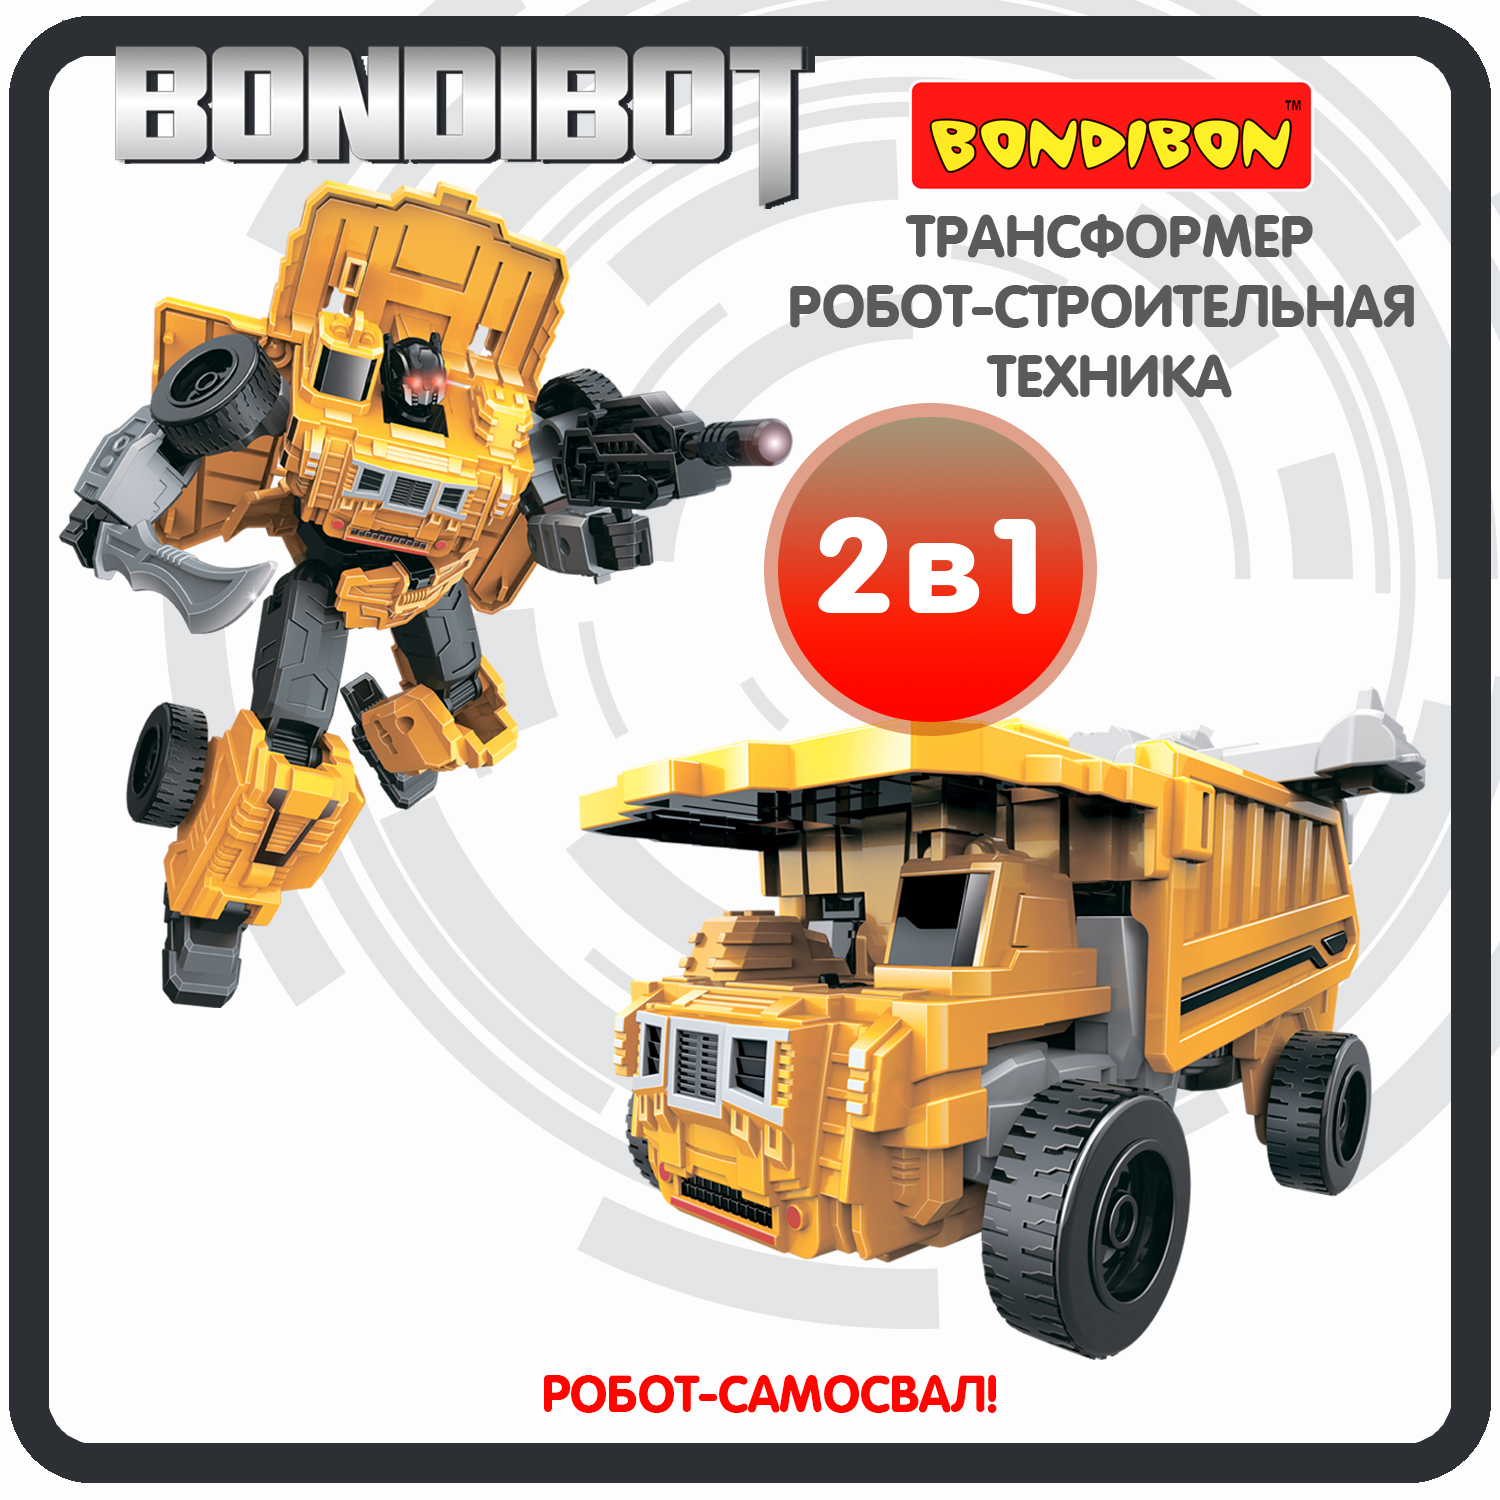 Трансформер робот-строительная техника, 2в1 BONDIBOT Bondibon, самосвал / ВВ6046 трансформер робот строительная техника 2в1 bondibot bondibon бульдозер вв6053